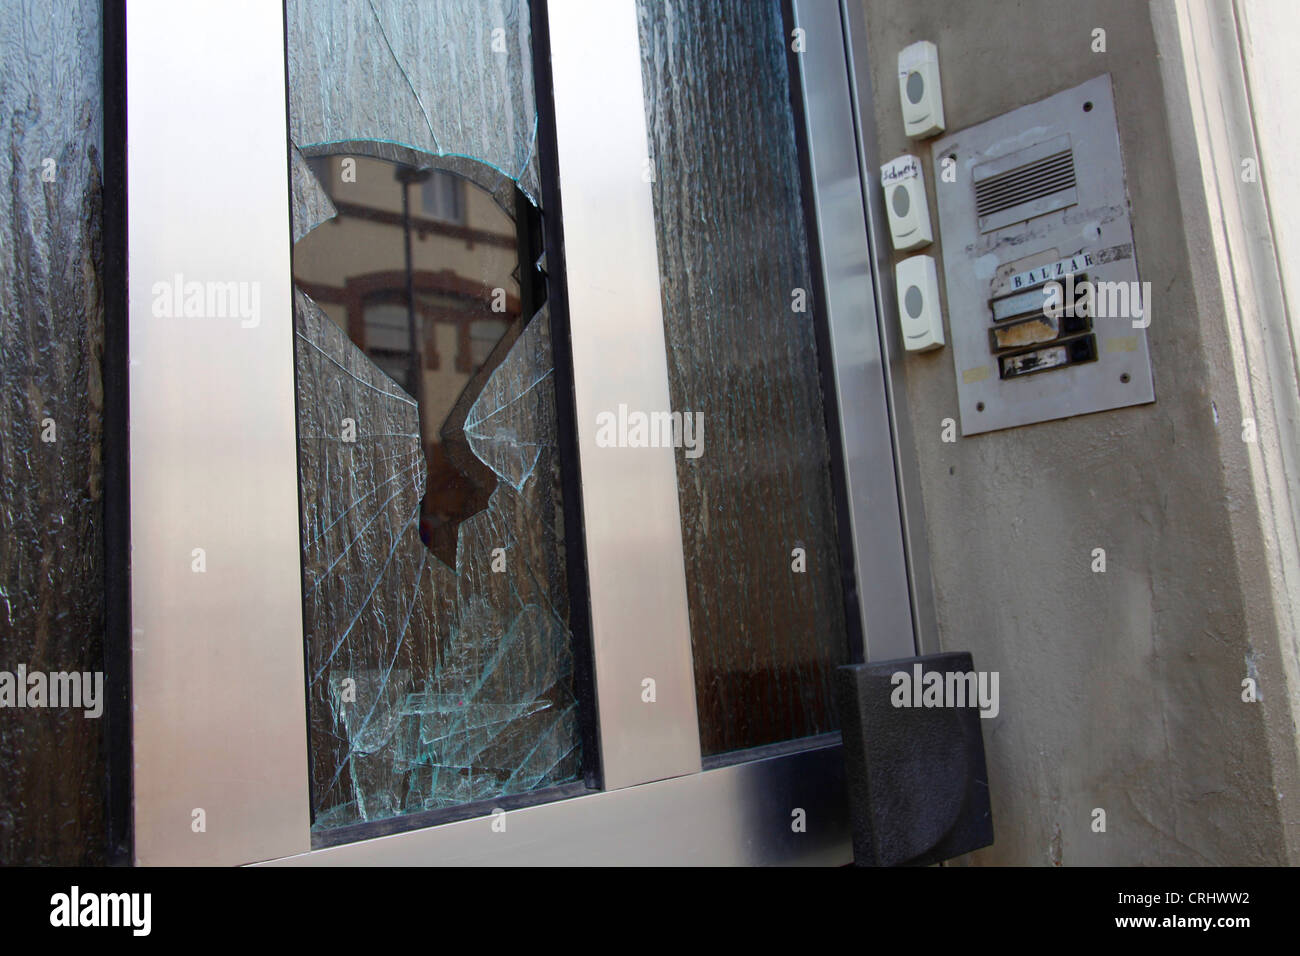 Entrée de la maison démolie avec plaque de verre cassé et panneau sonnette, Allemagne Banque D'Images